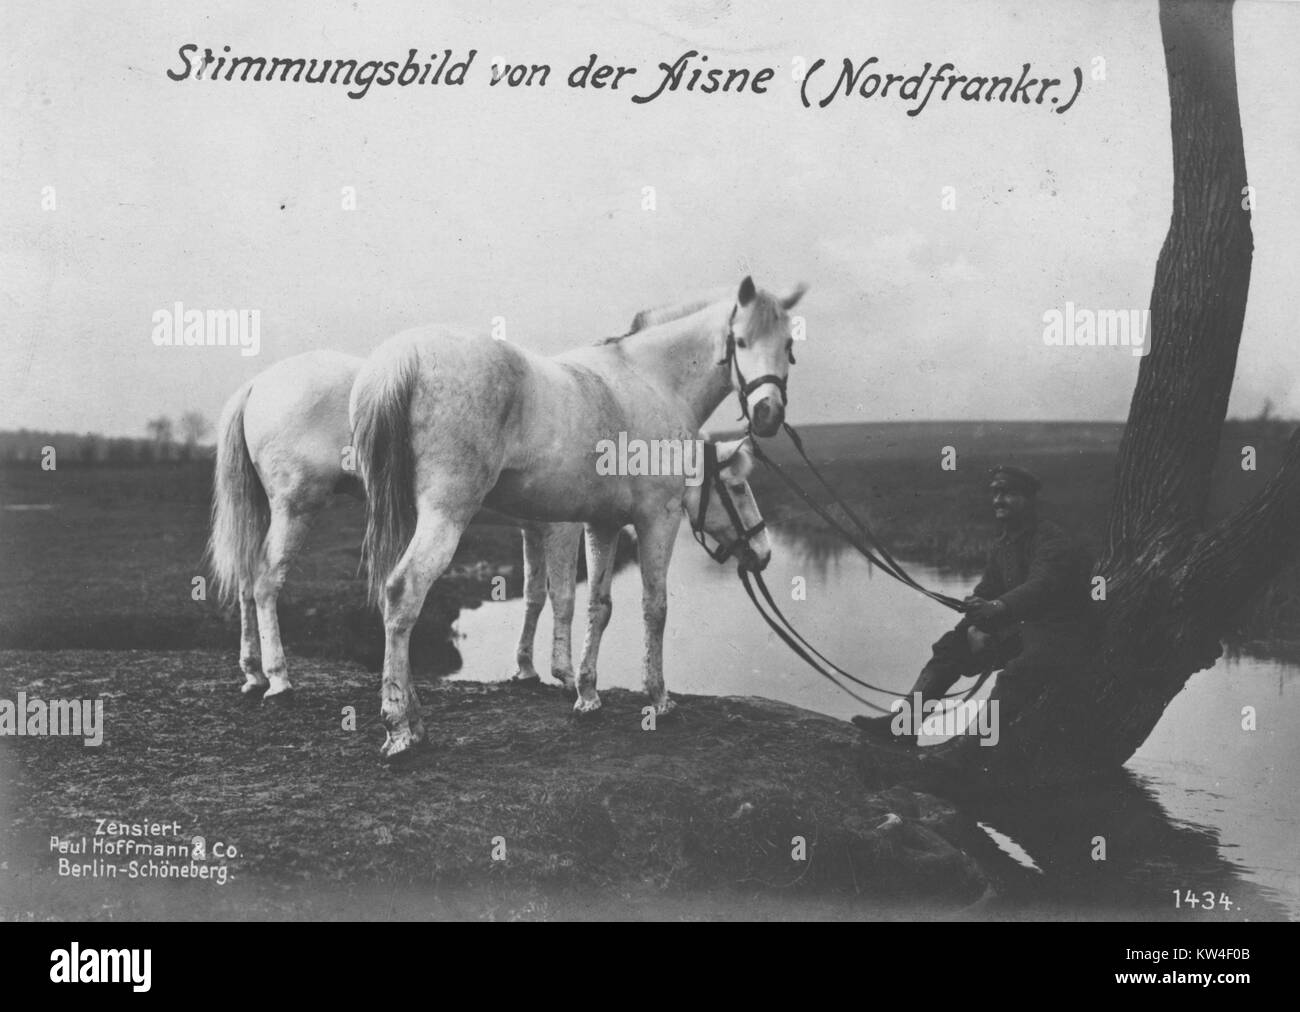 German solider with two horses, with original caption reading Stimmungsbild von der Aisne (Nordfrankr.), 1900. Stock Photo